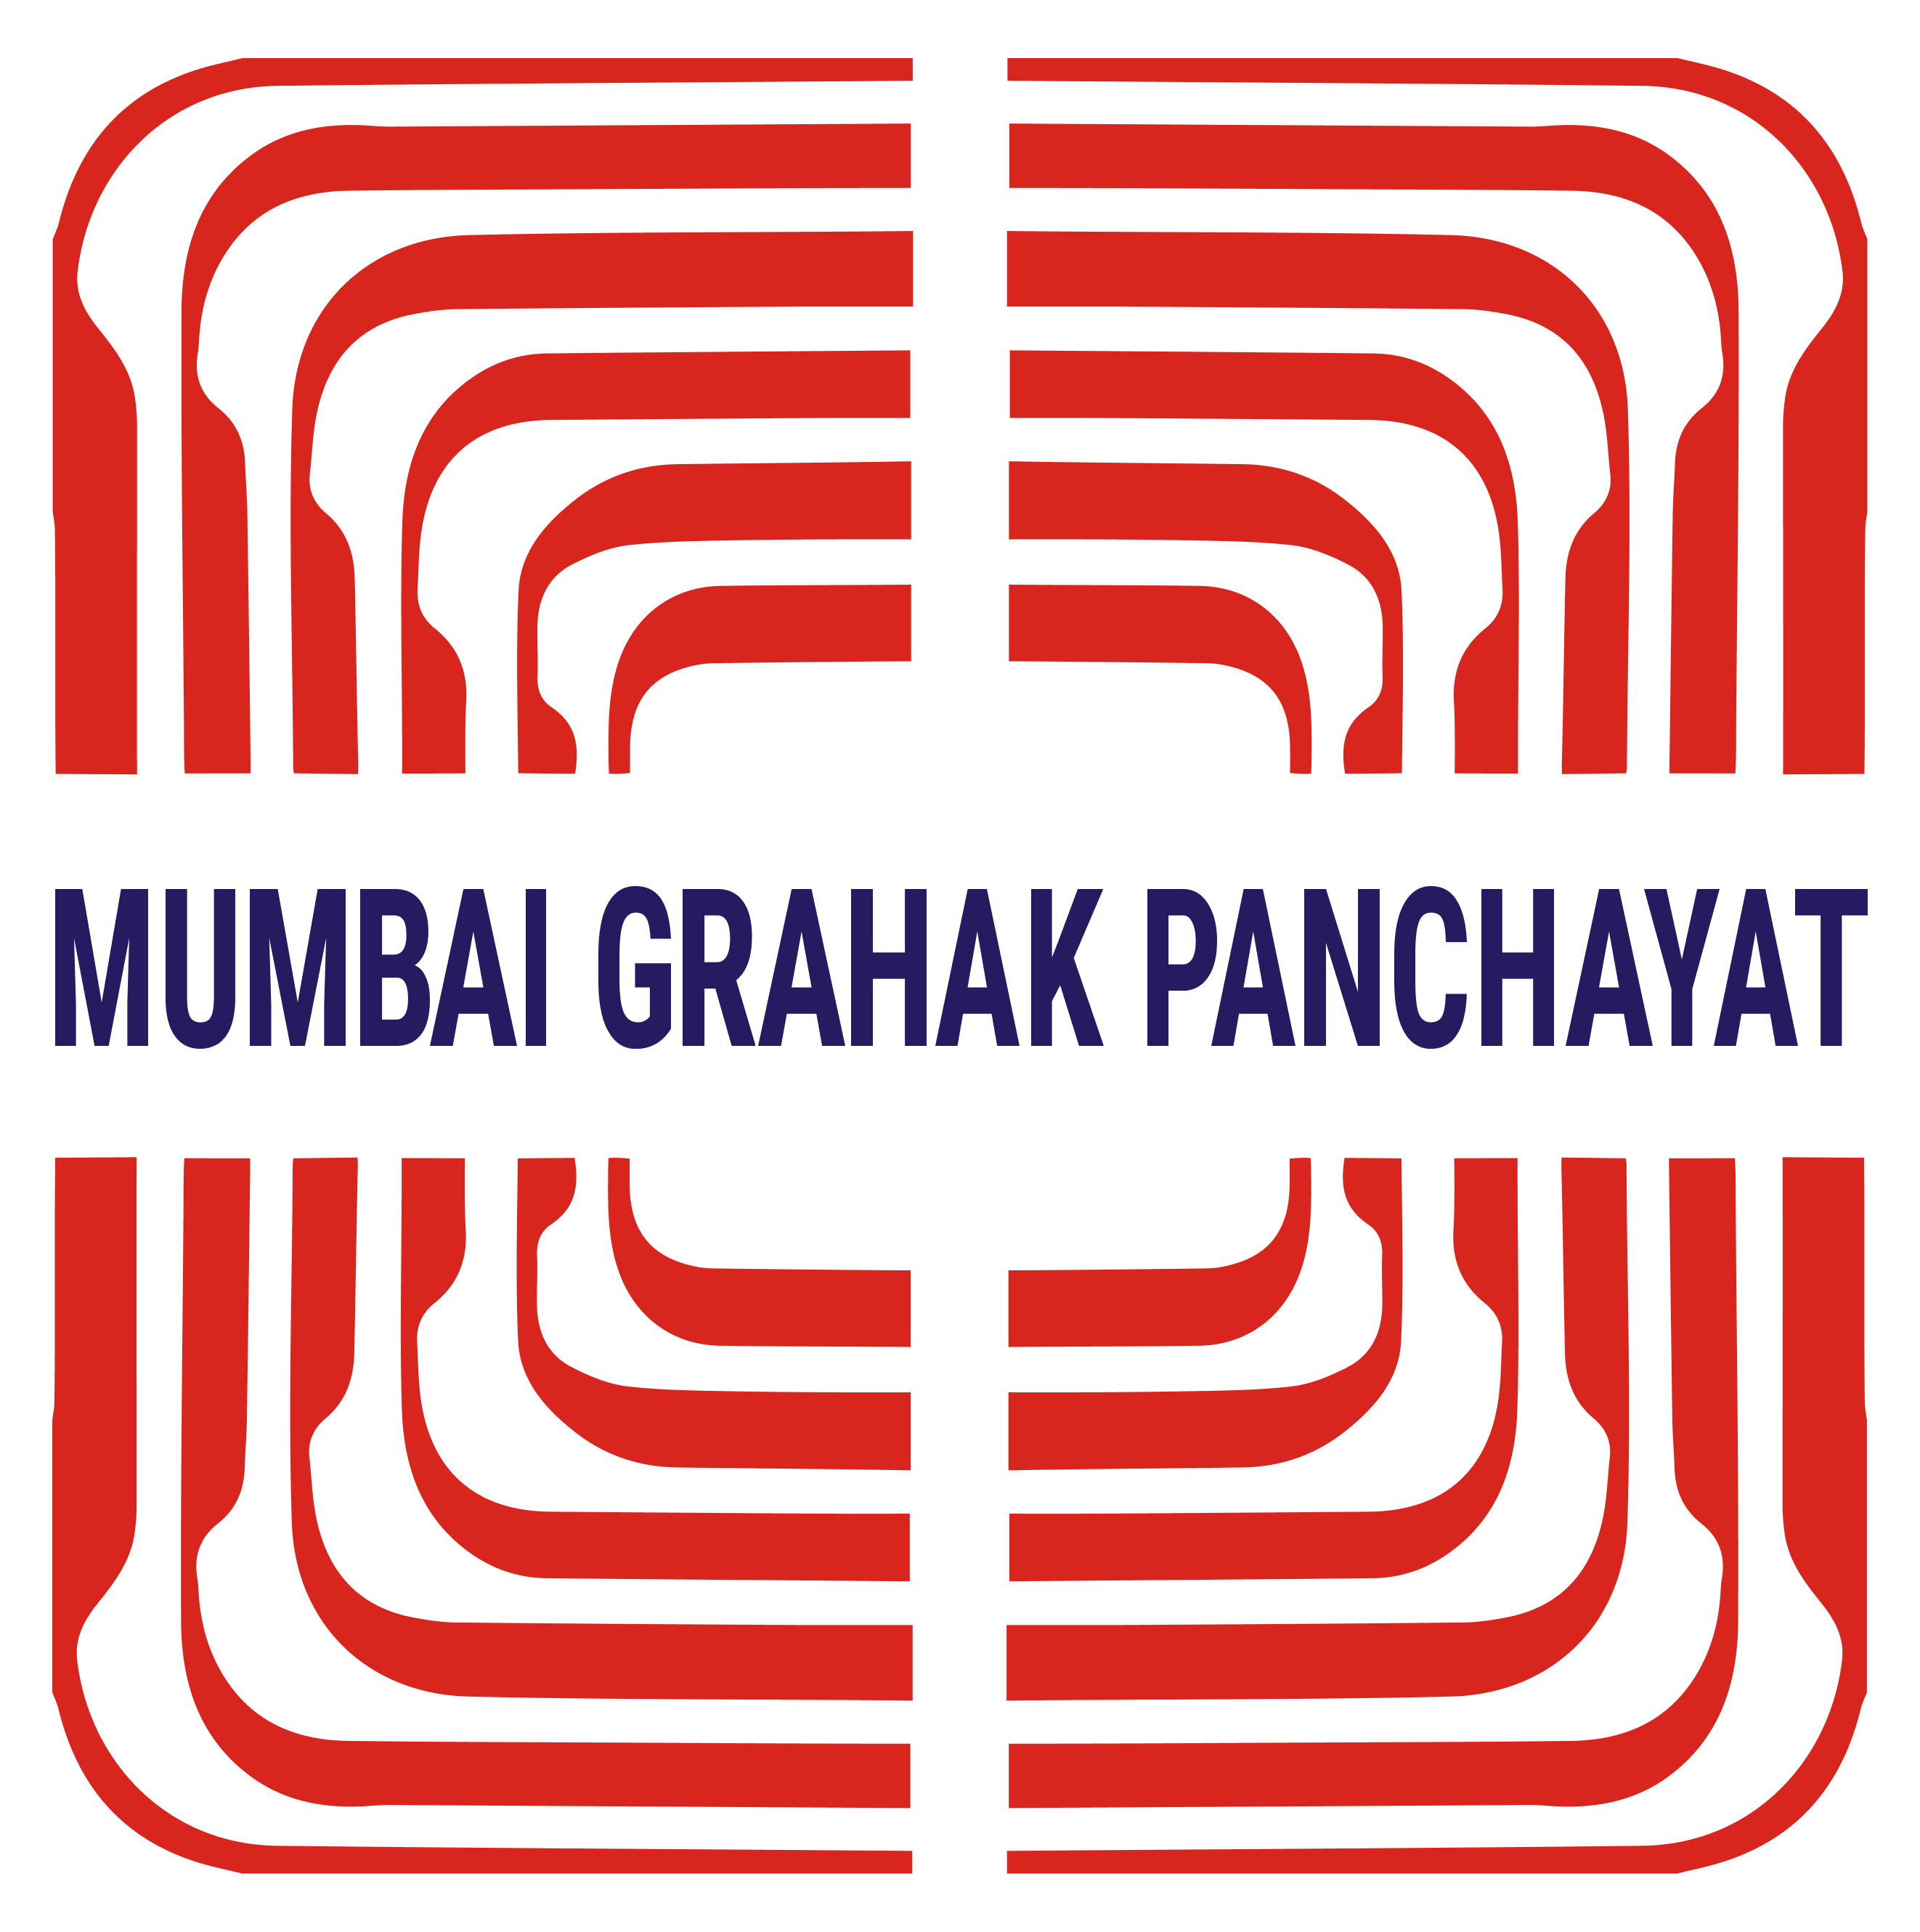 Mumbai Grahak Panchayat